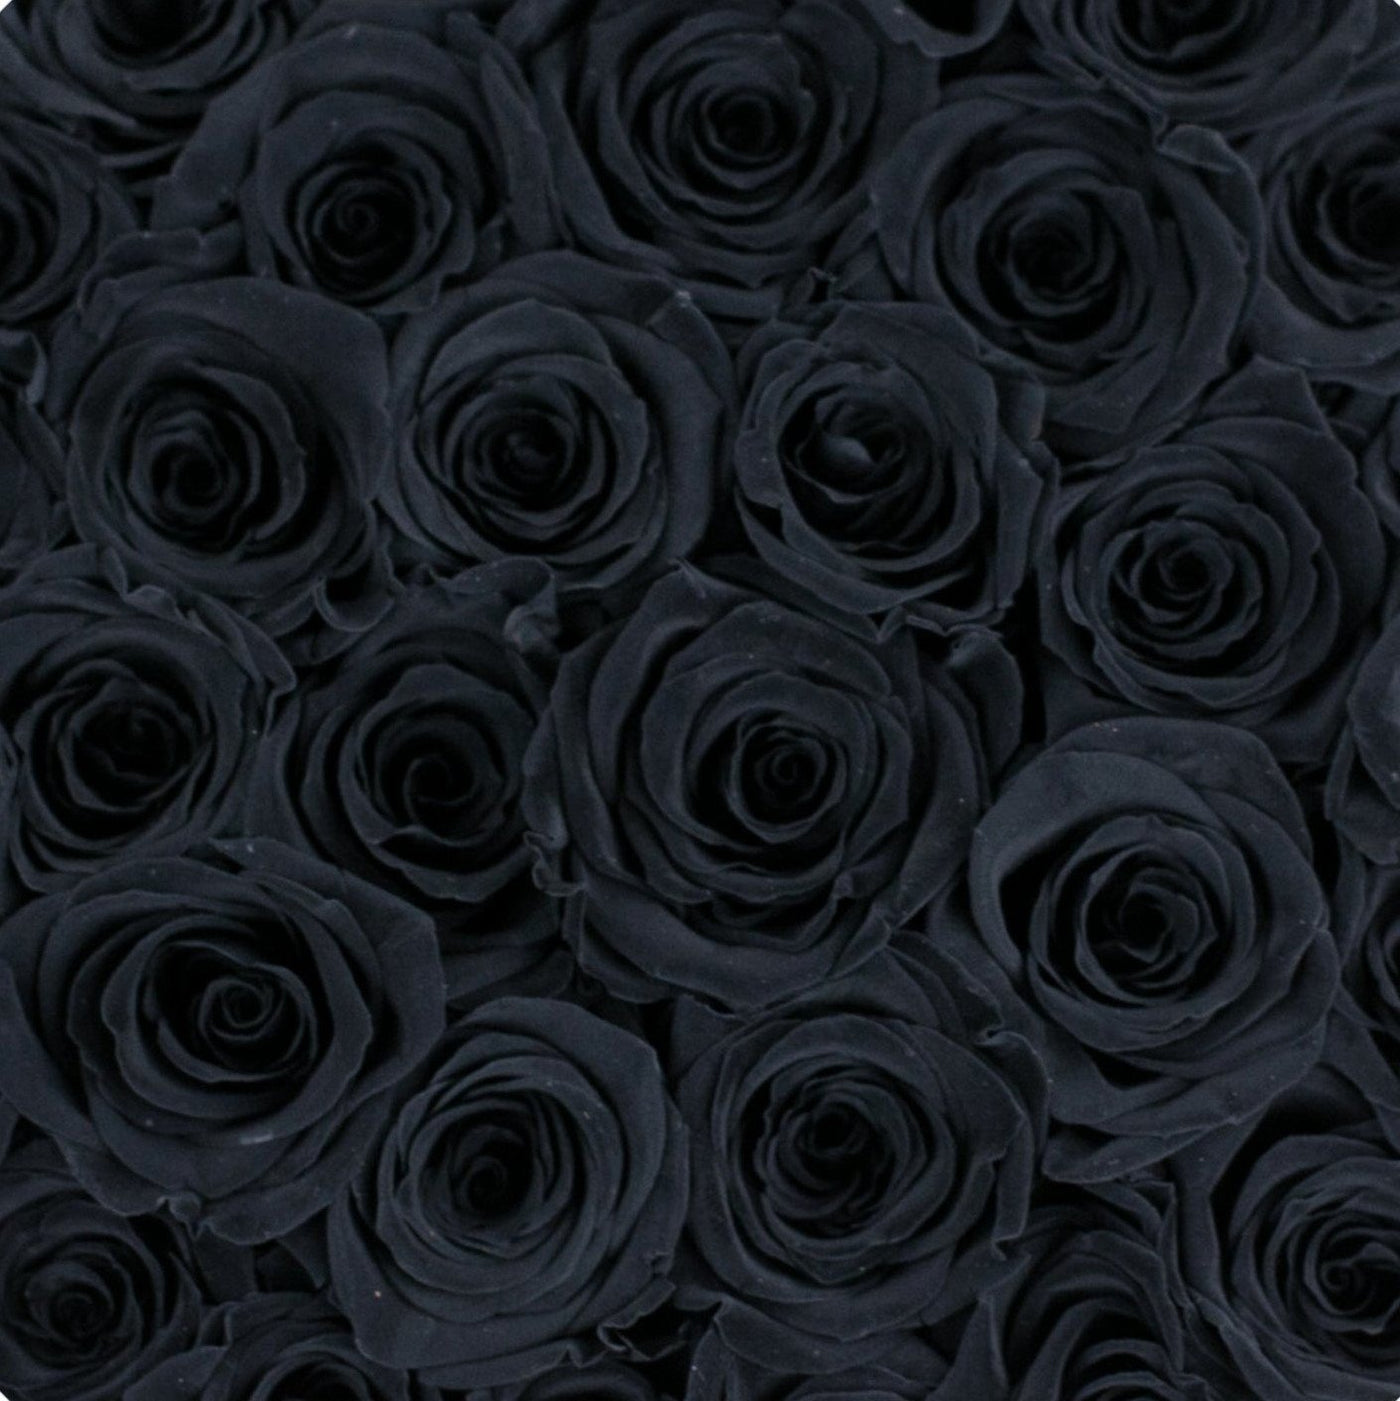 Black Roses - palatial petals